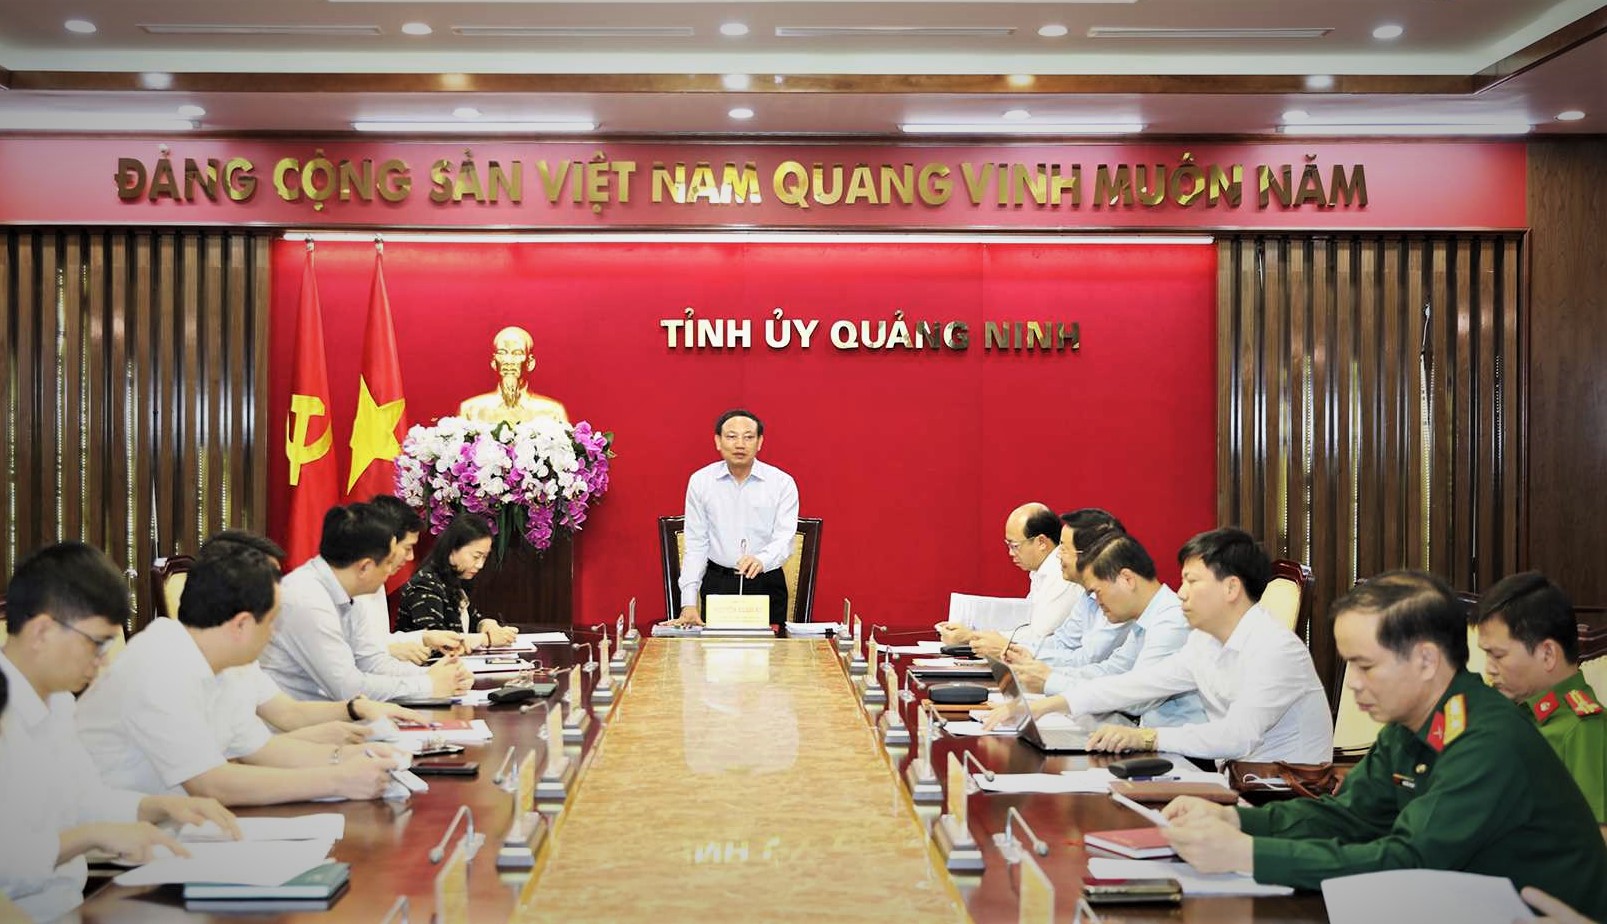 Đồng chí Nguyễn Xuân Ký, Ủy viên Trung ương Đảng, Bí thư Tỉnh ủy Quảng Ninh phát biểu tại buổi giao ban công tác công tác nội chính, phòng, chống tham nhũng và cải cách tư pháp (tháng 4/2021) 